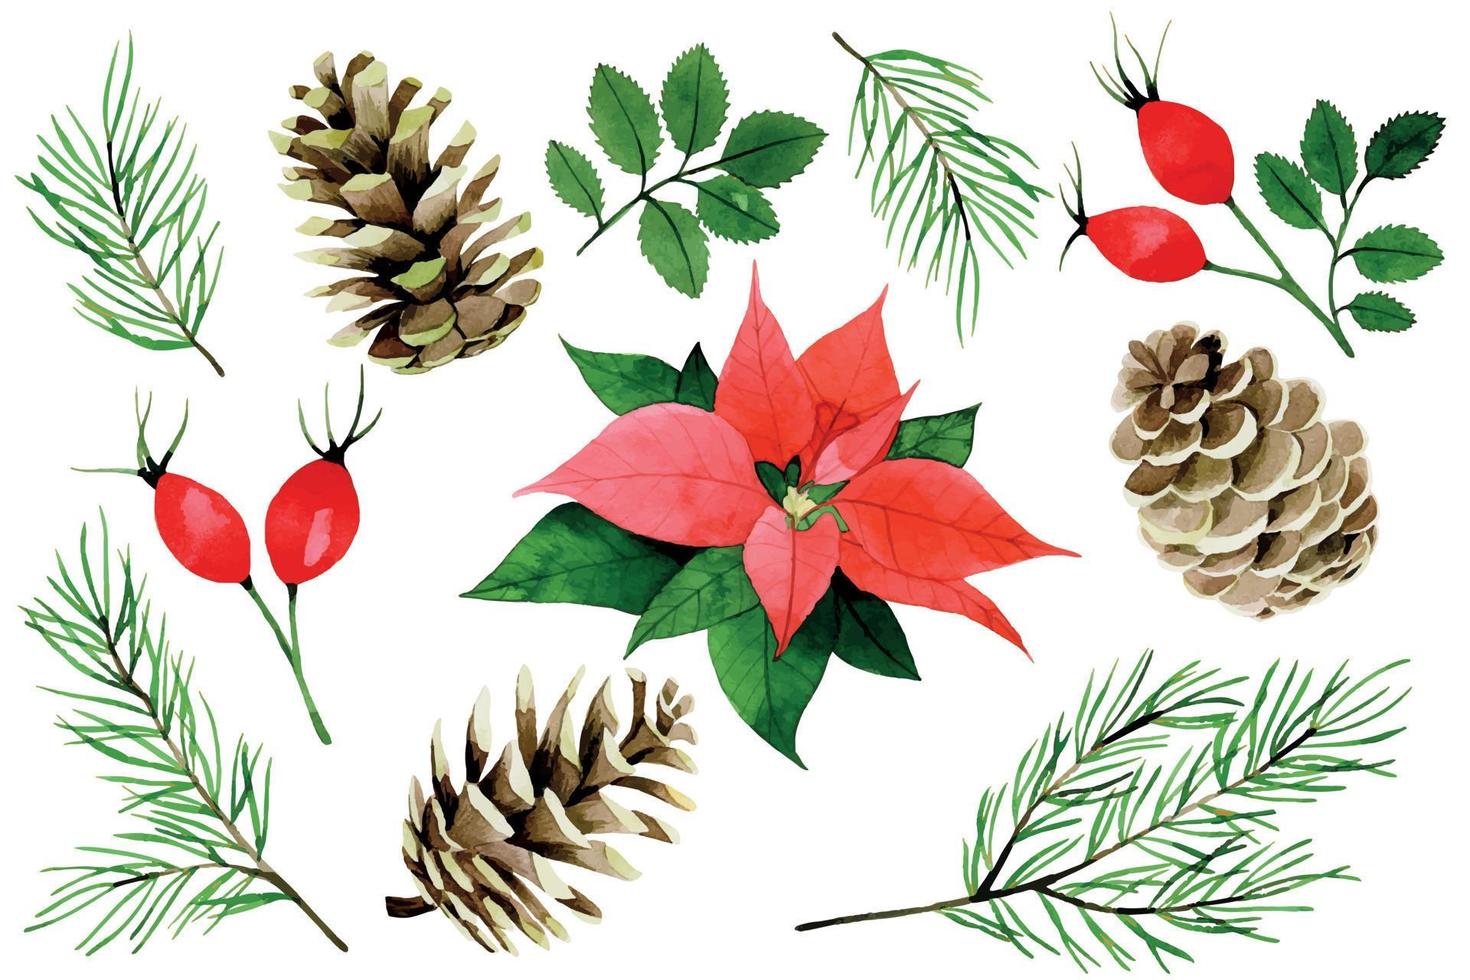 akvarell jul, vinter set. julstjärna, röda bär och blad av vildros, grangrenar och kottar isolerad på vit bakgrund. vintagekollektion för det nya året vektor